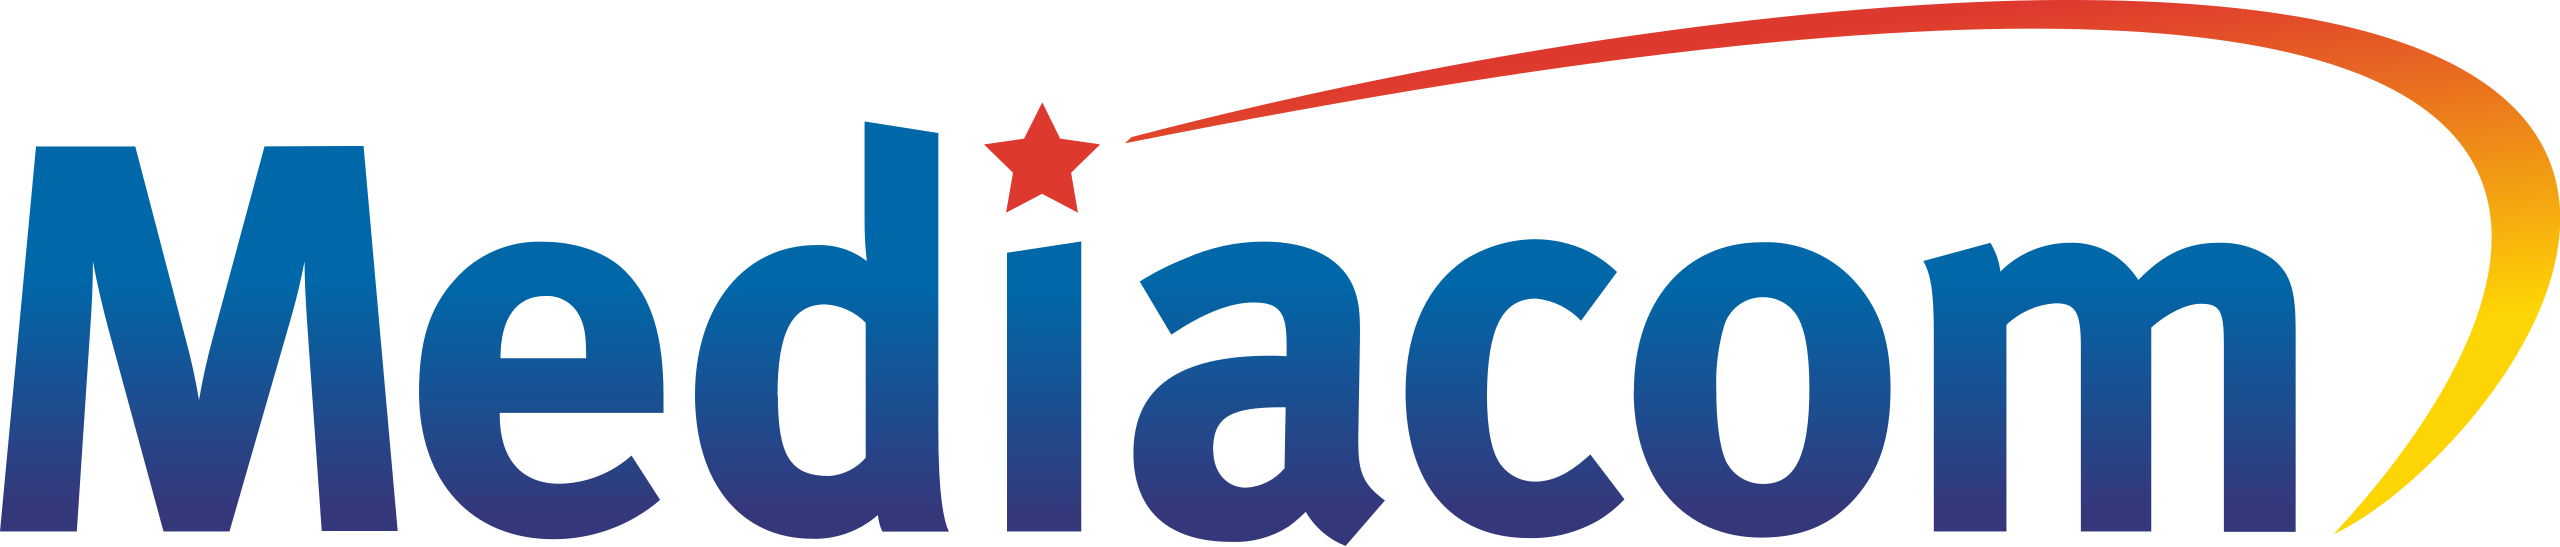 Mediacom-Logo